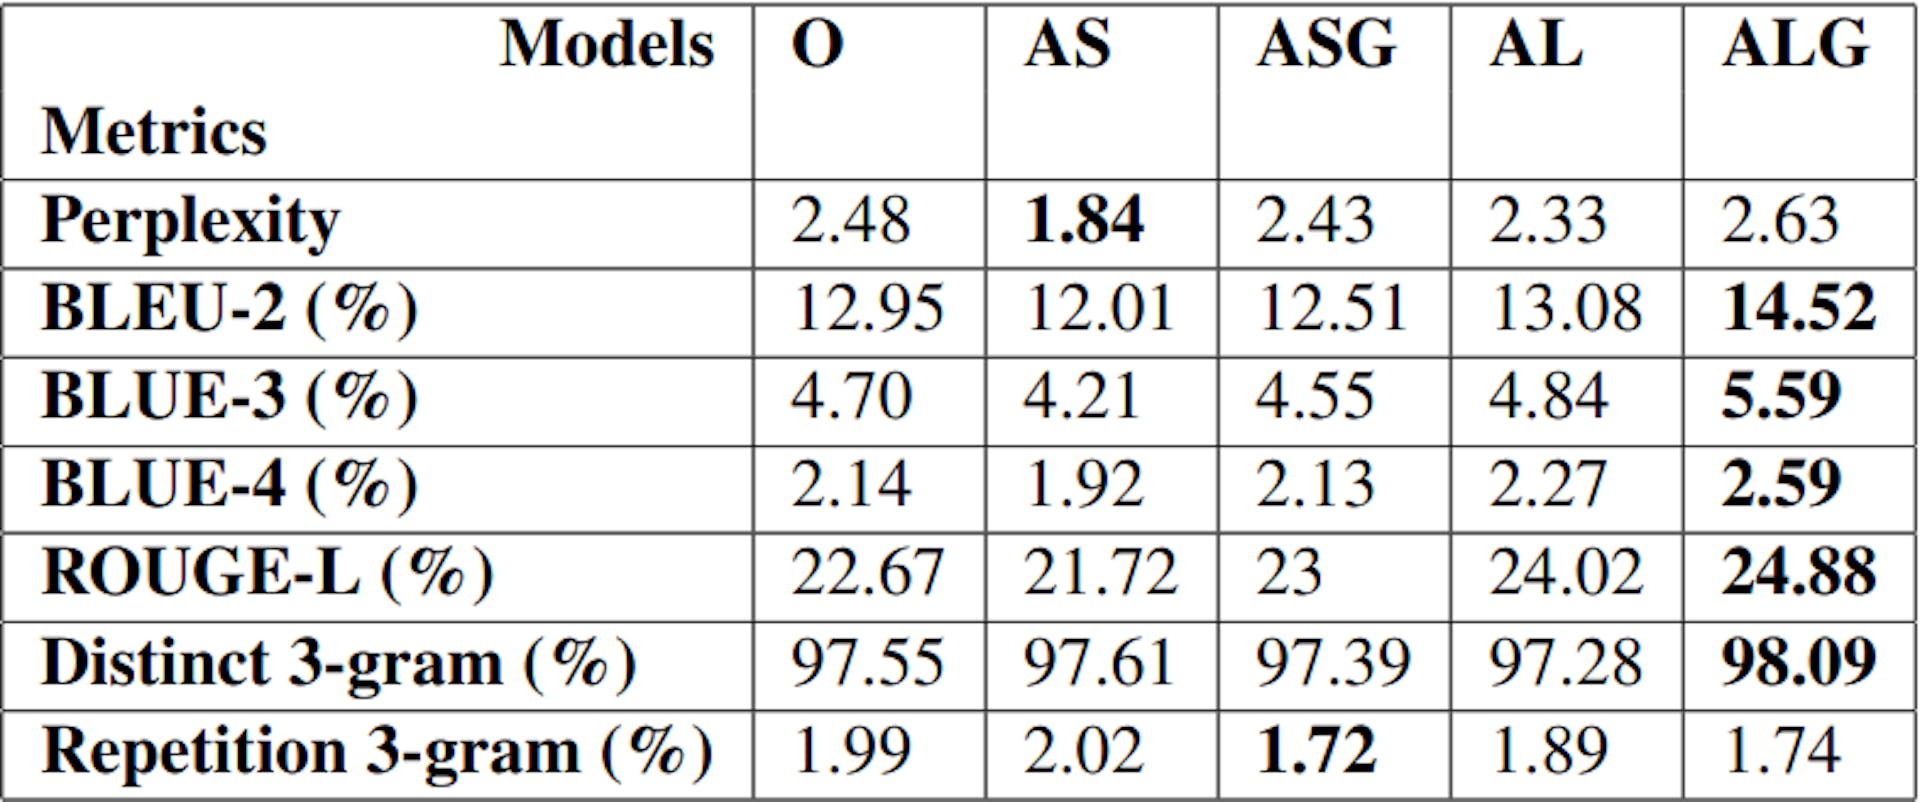 表1: GPT-3で微調整された5つのハリウッドプロット生成モデルの共通評価指標のスコア（O、AS、ASG、AL、ALG（5.1））